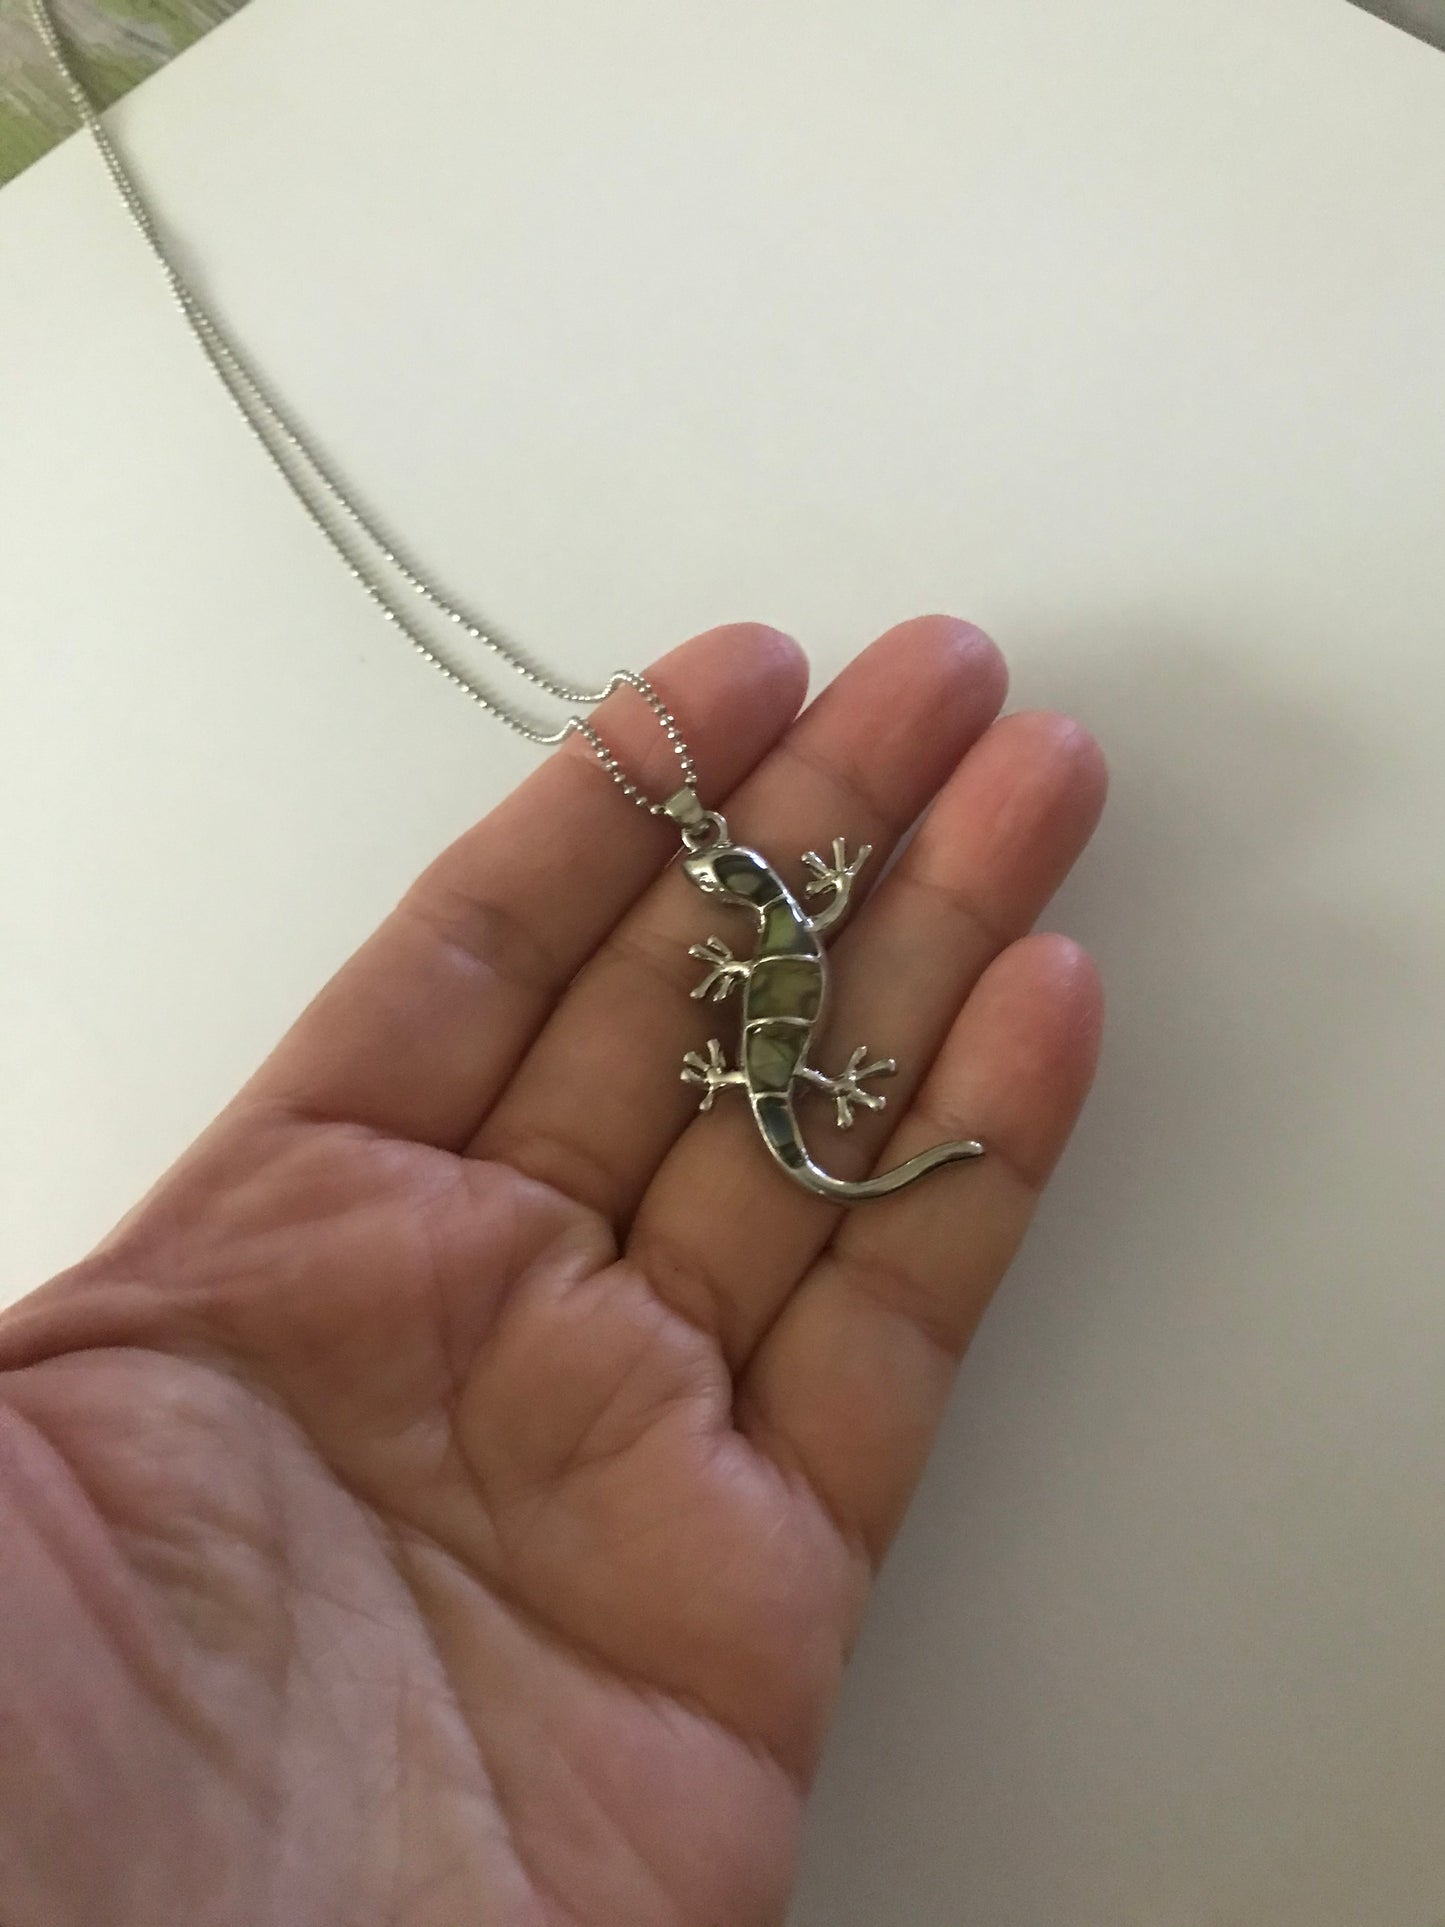 Lizard pendant Necklace